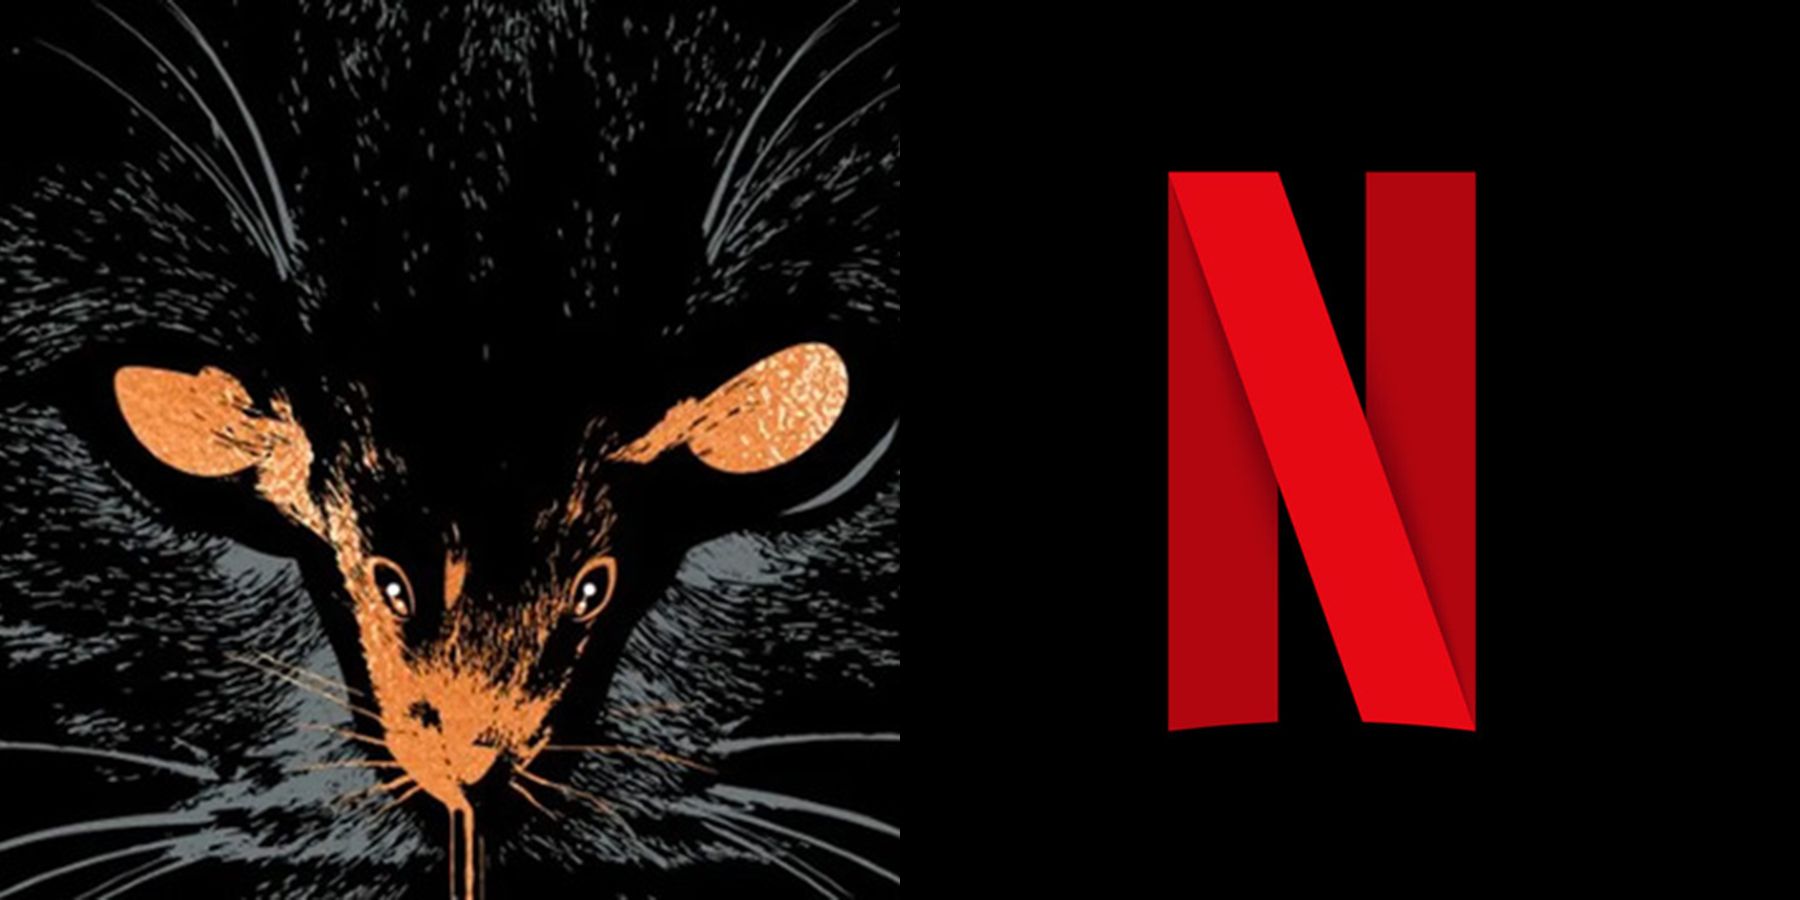 جايسون بلوم وريان مورفي ينتجان فيلم تكيفي لستيفن كينج مع Netflix